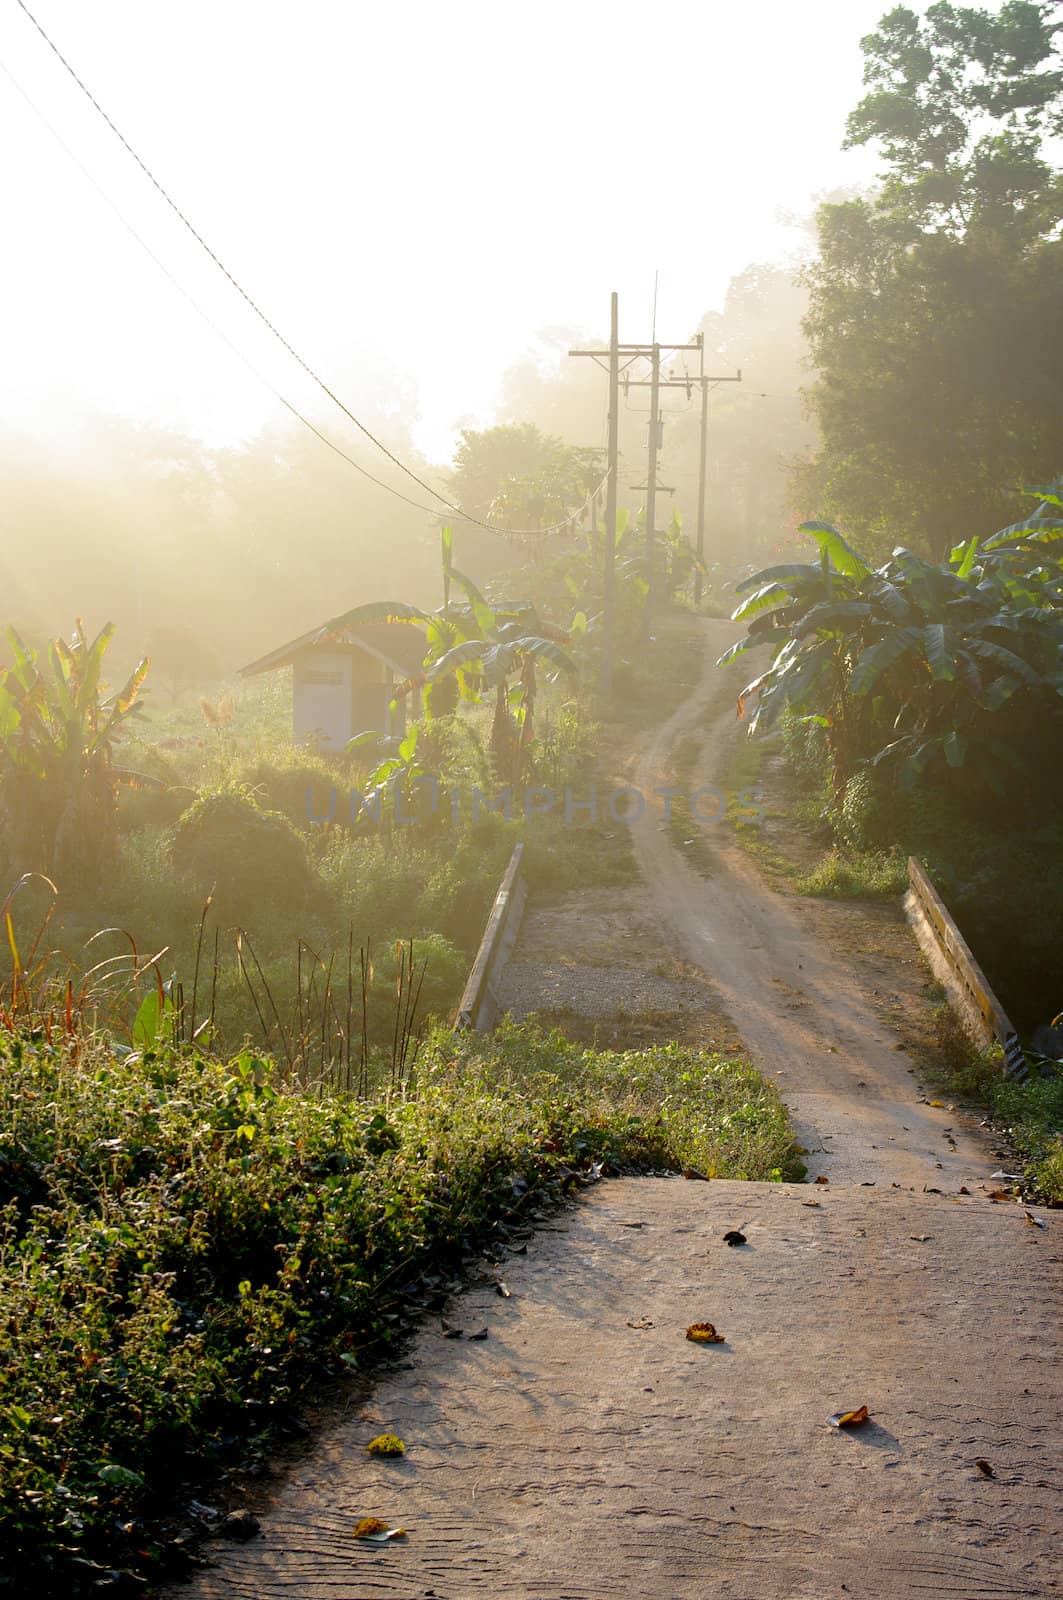 Urban road with morning light at Chiang Rai, Thailand